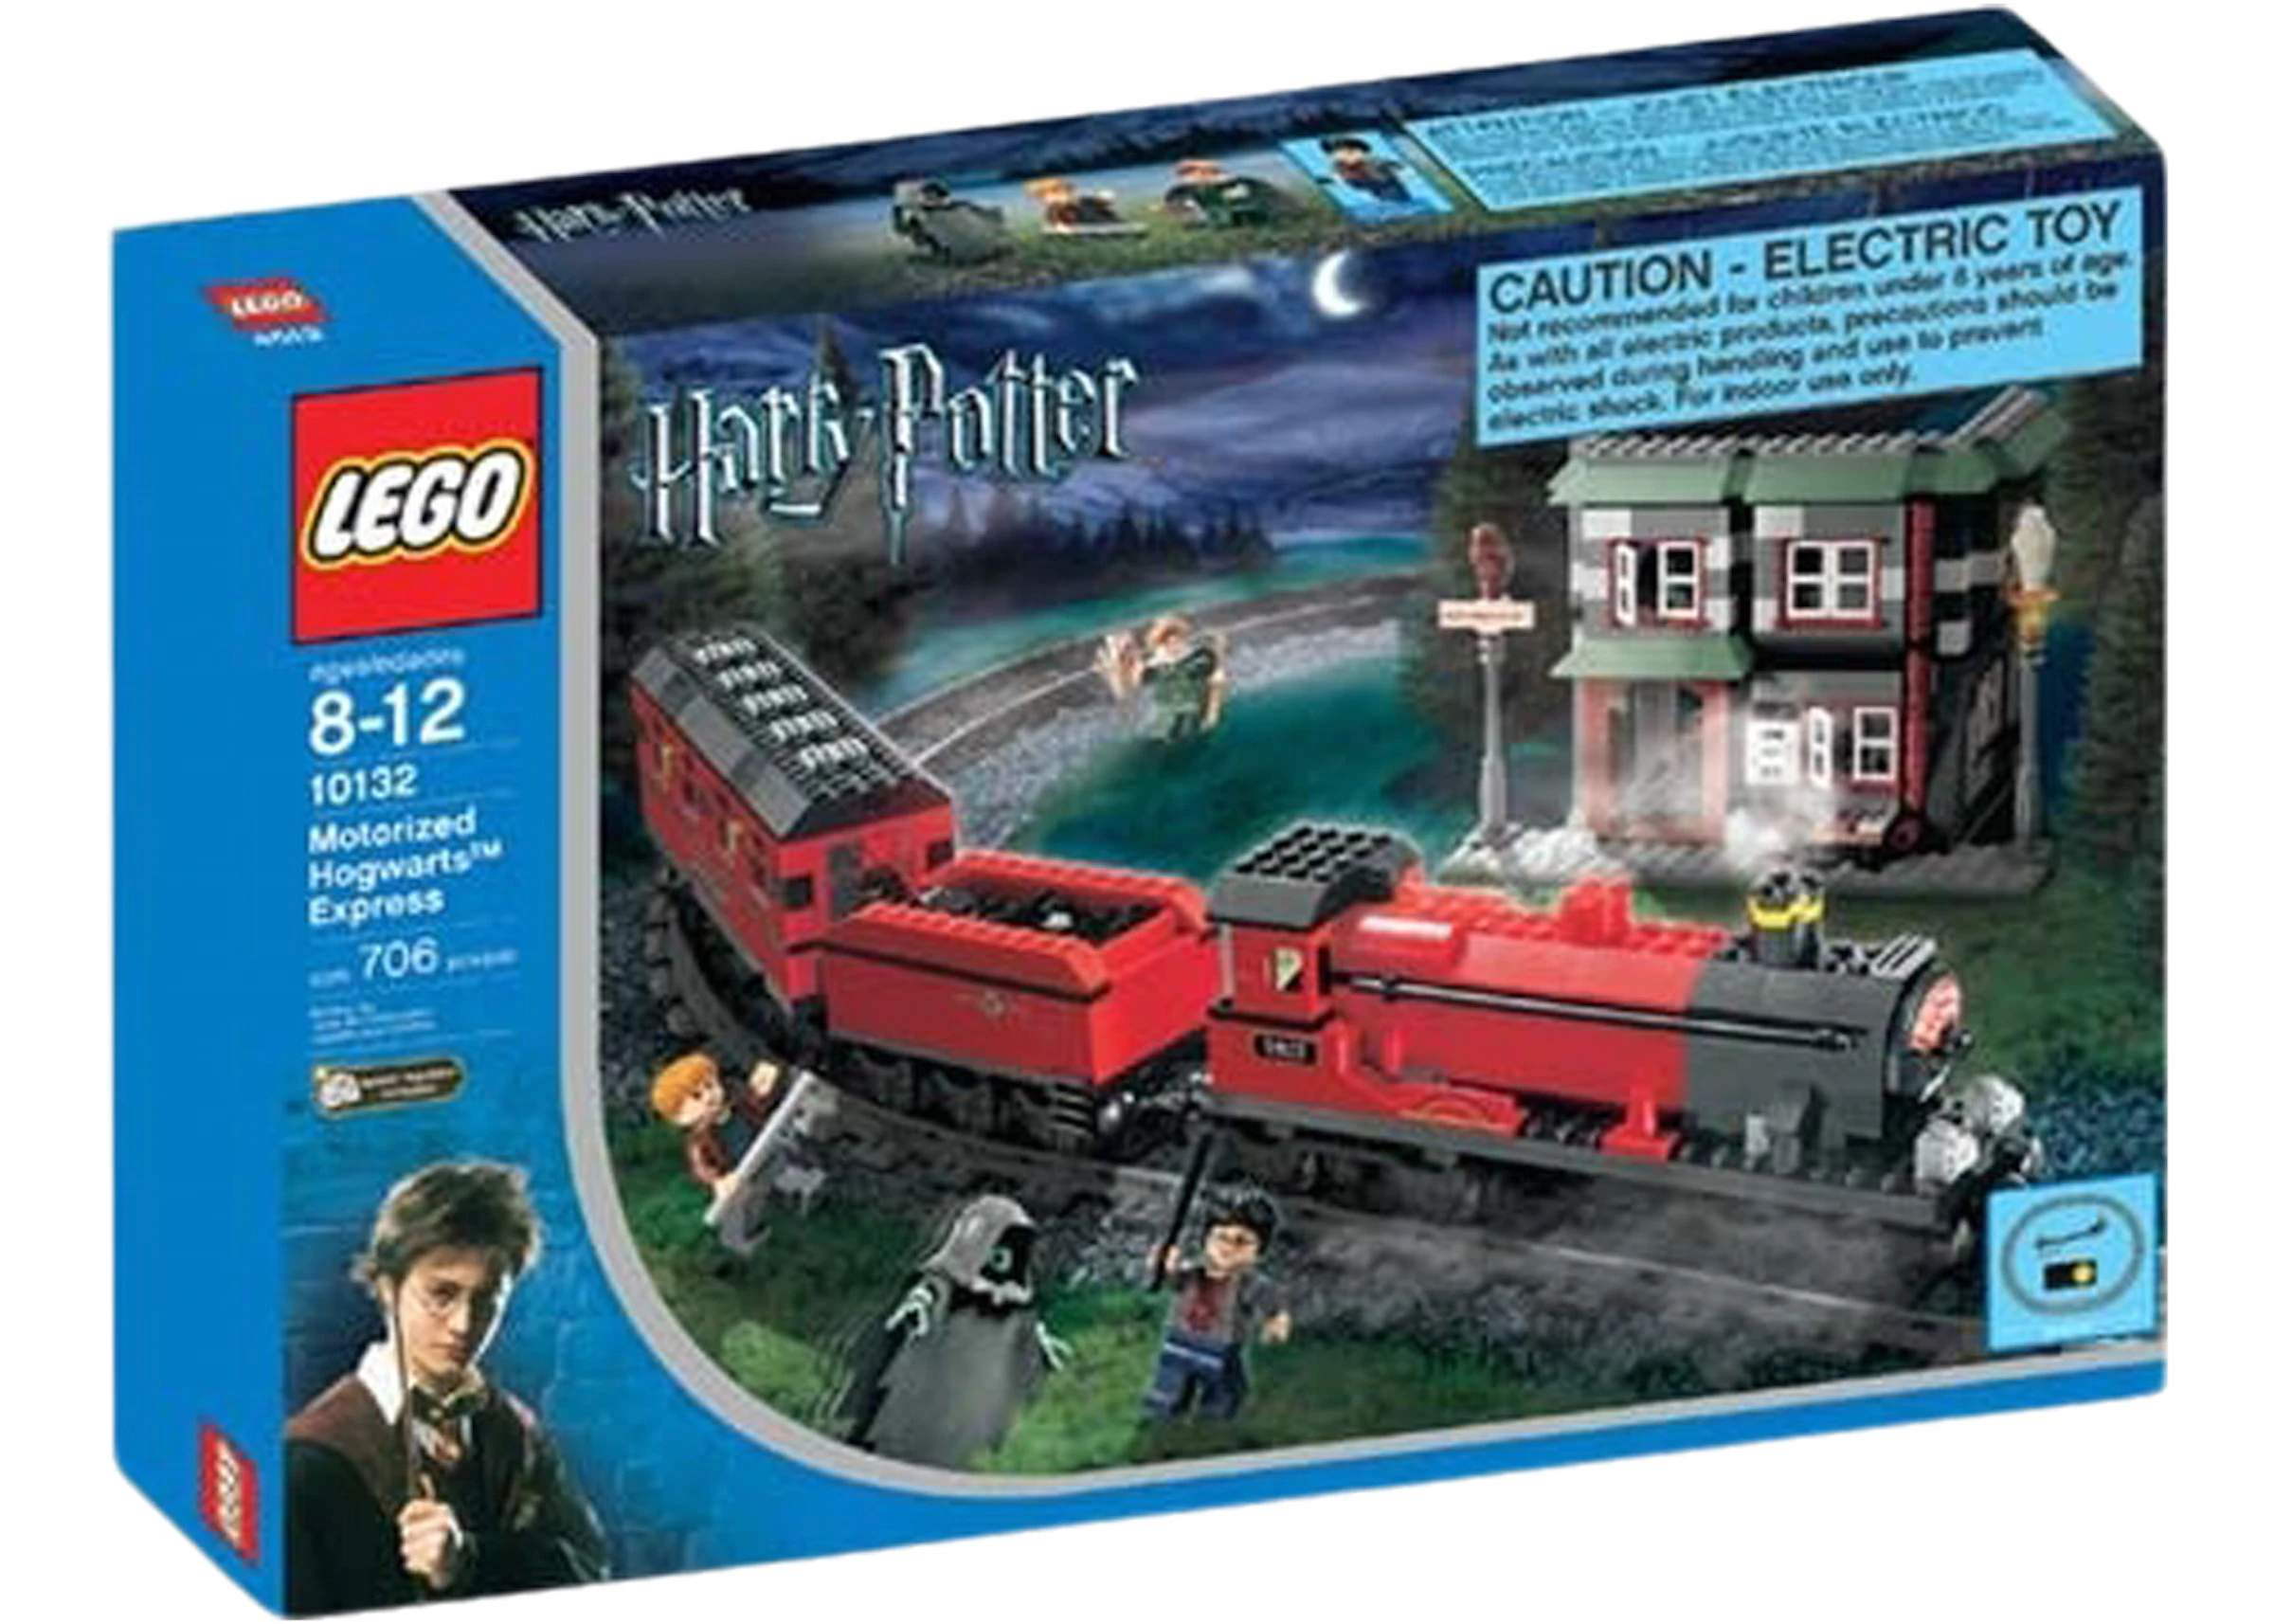 Hacer bien Enfadarse Hacia abajo LEGO Harry Potter Motorised Hogwarts Express Set 10132 - ES